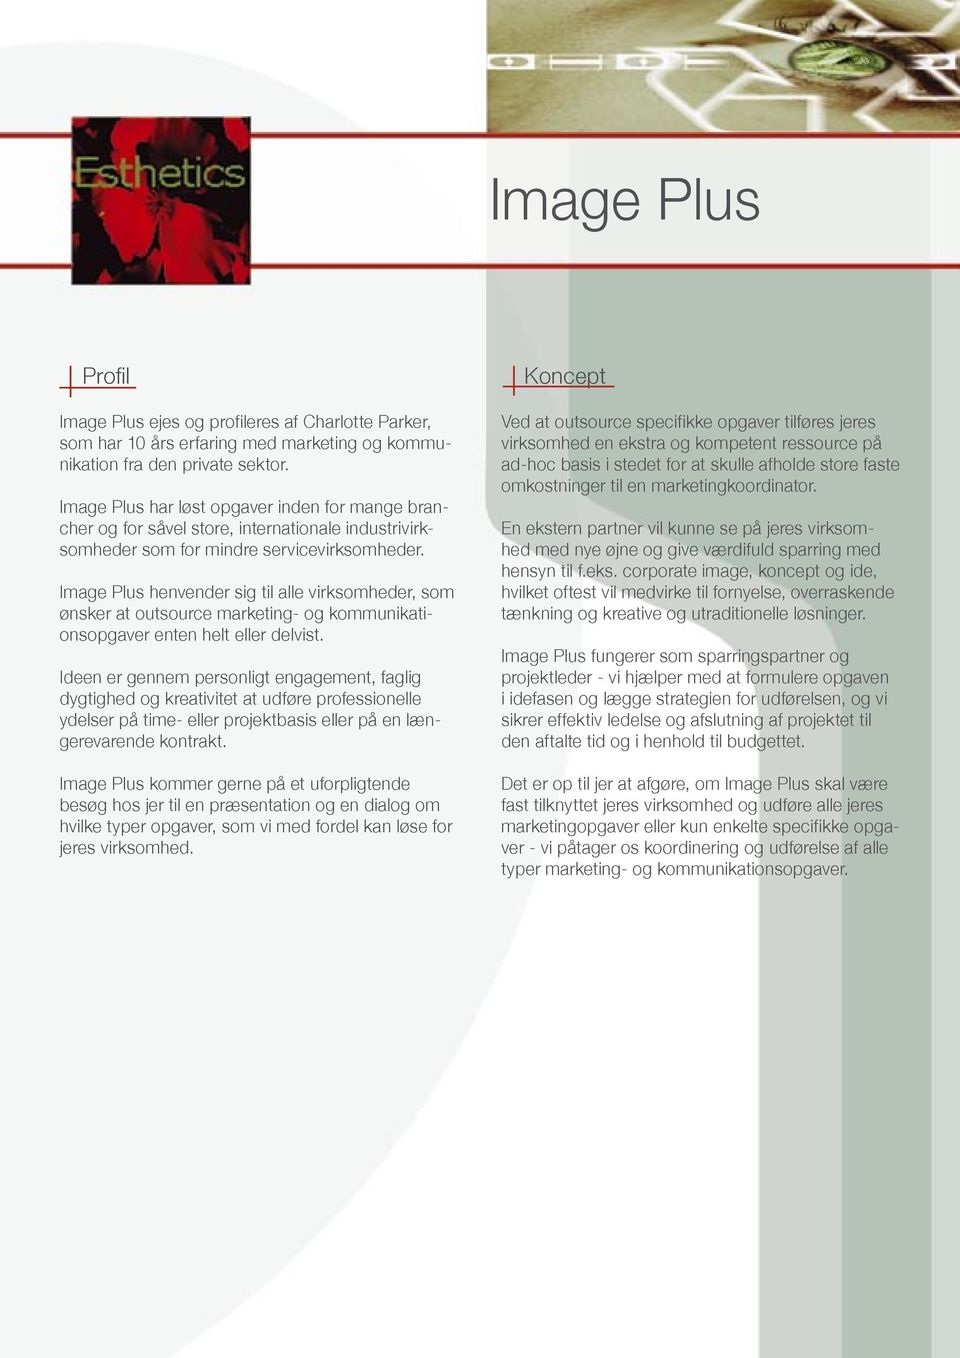 Image Plus henvender sig til alle virksomheder, som ønsker at outsource marketing- og kommunikationsopgaver enten helt eller delvist.